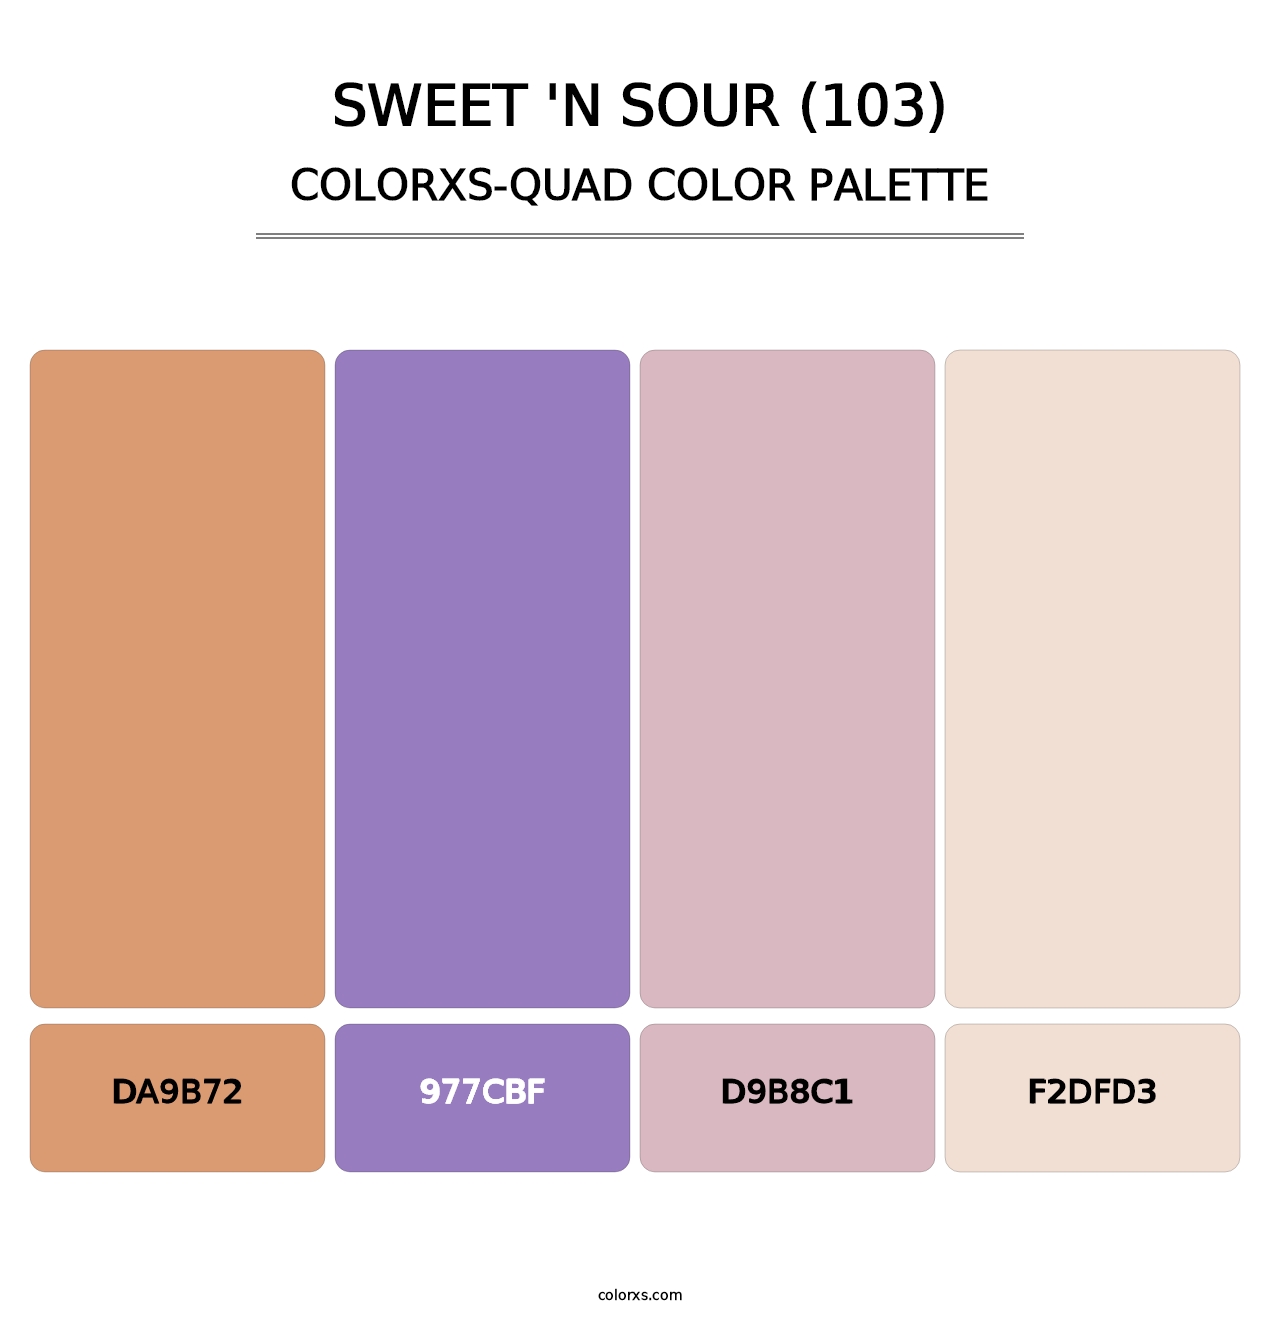 Sweet 'n Sour (103) - Colorxs Quad Palette